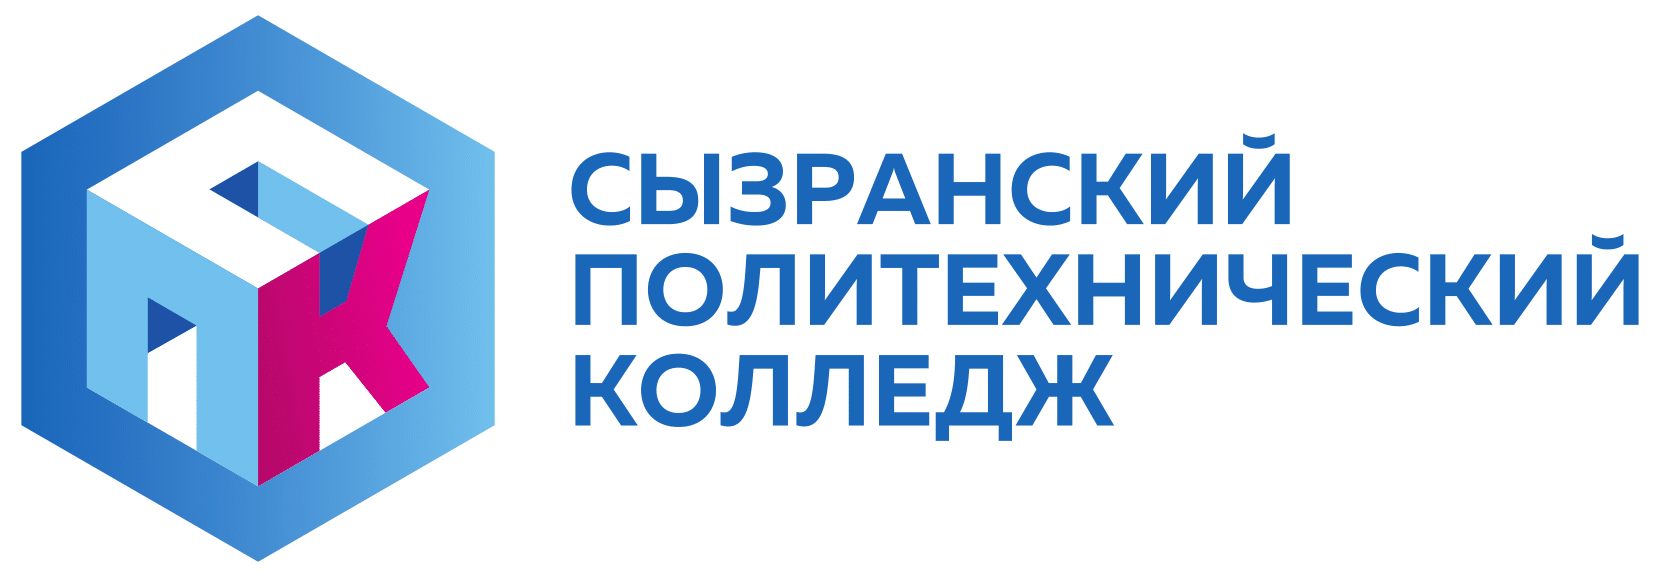 ГБПОУ Самарской области «Сызранский политехнический колледж»